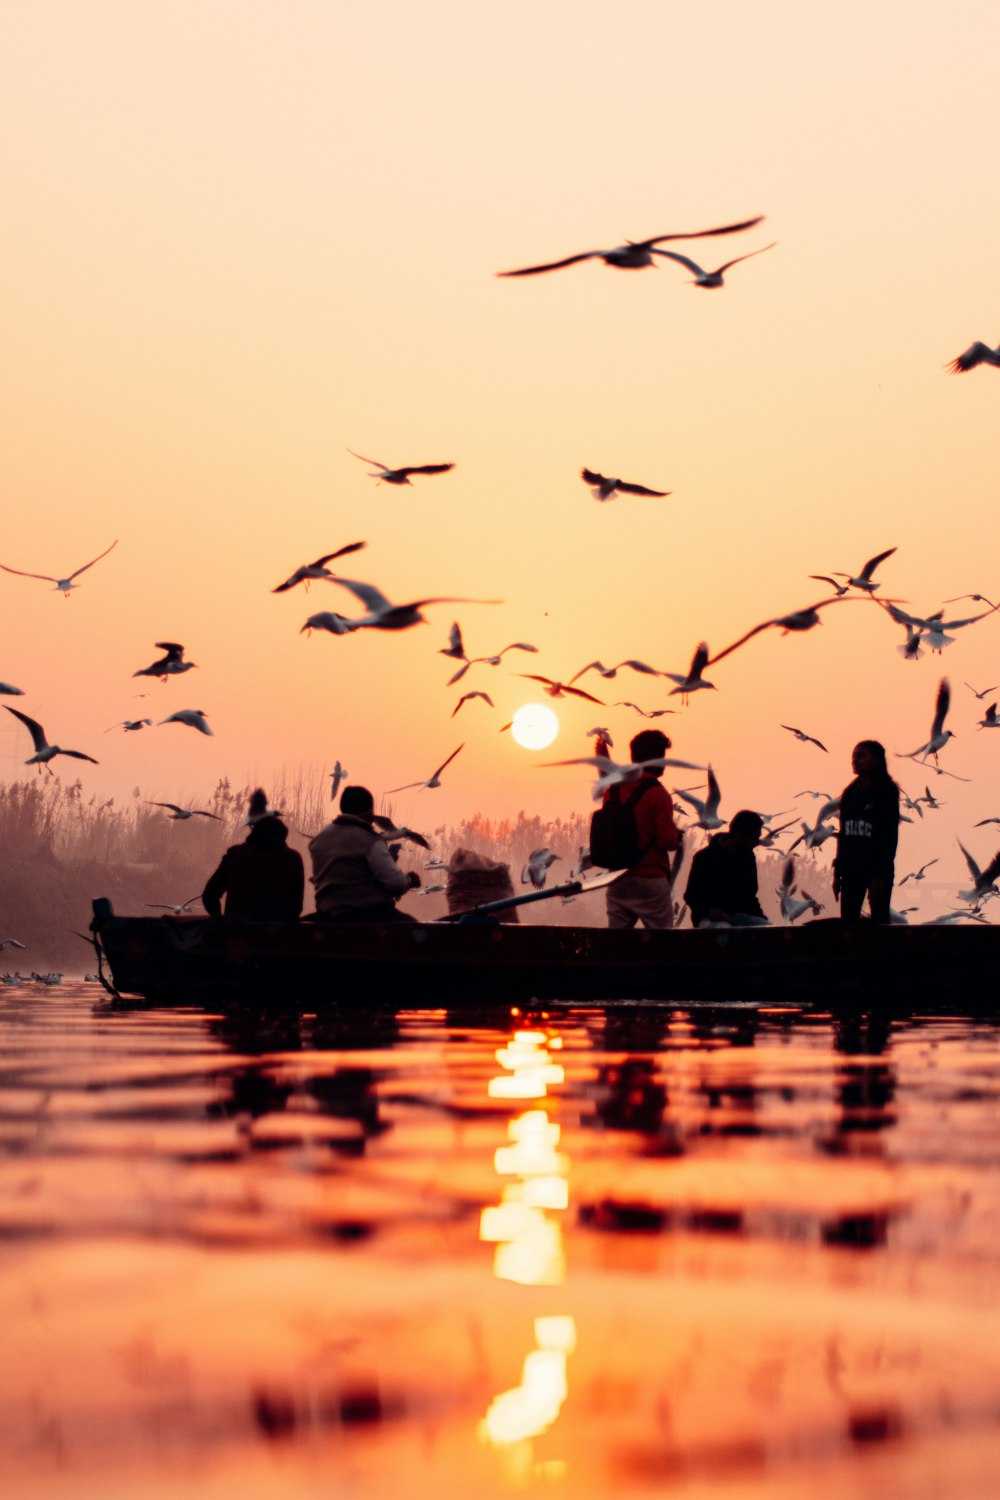 um grupo de pessoas em um barco com pássaros voando sobre eles